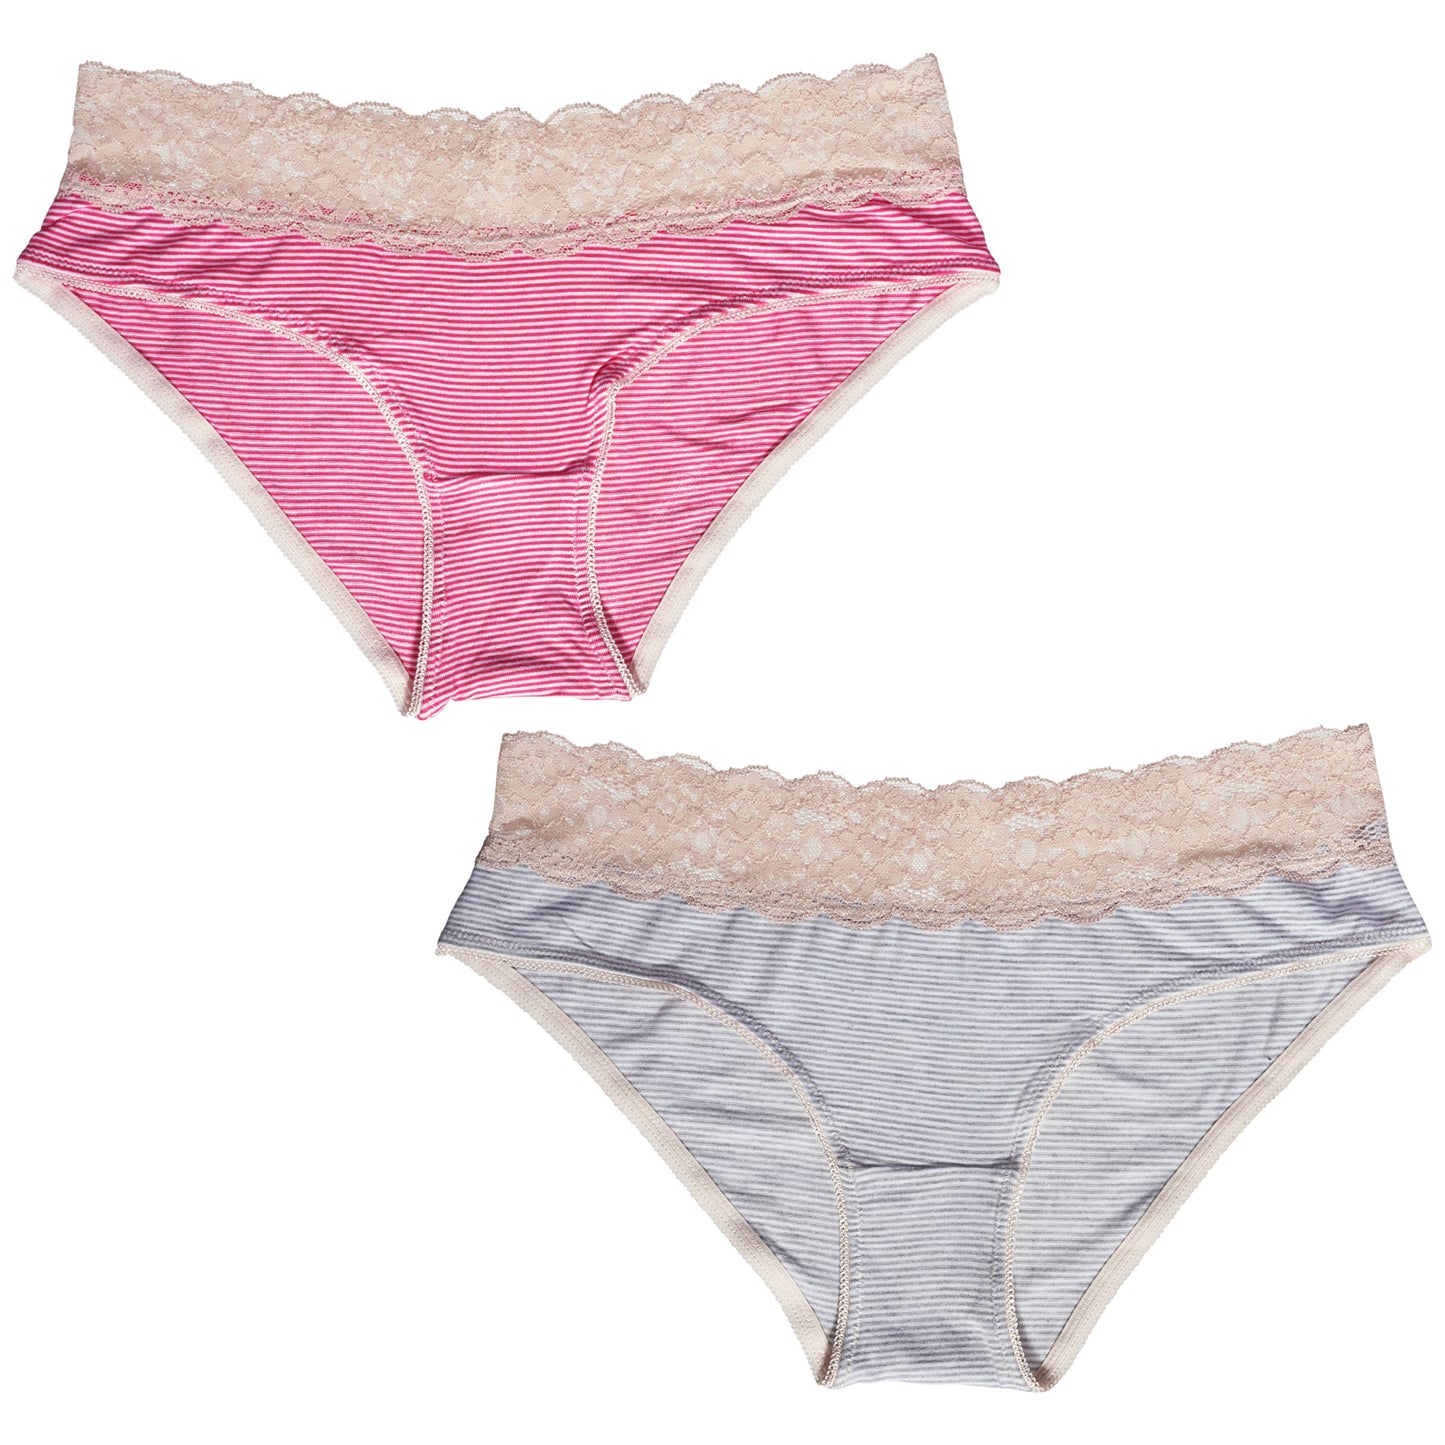 Cotton Soft Women Underwear Knickers Boxer Briefs Short